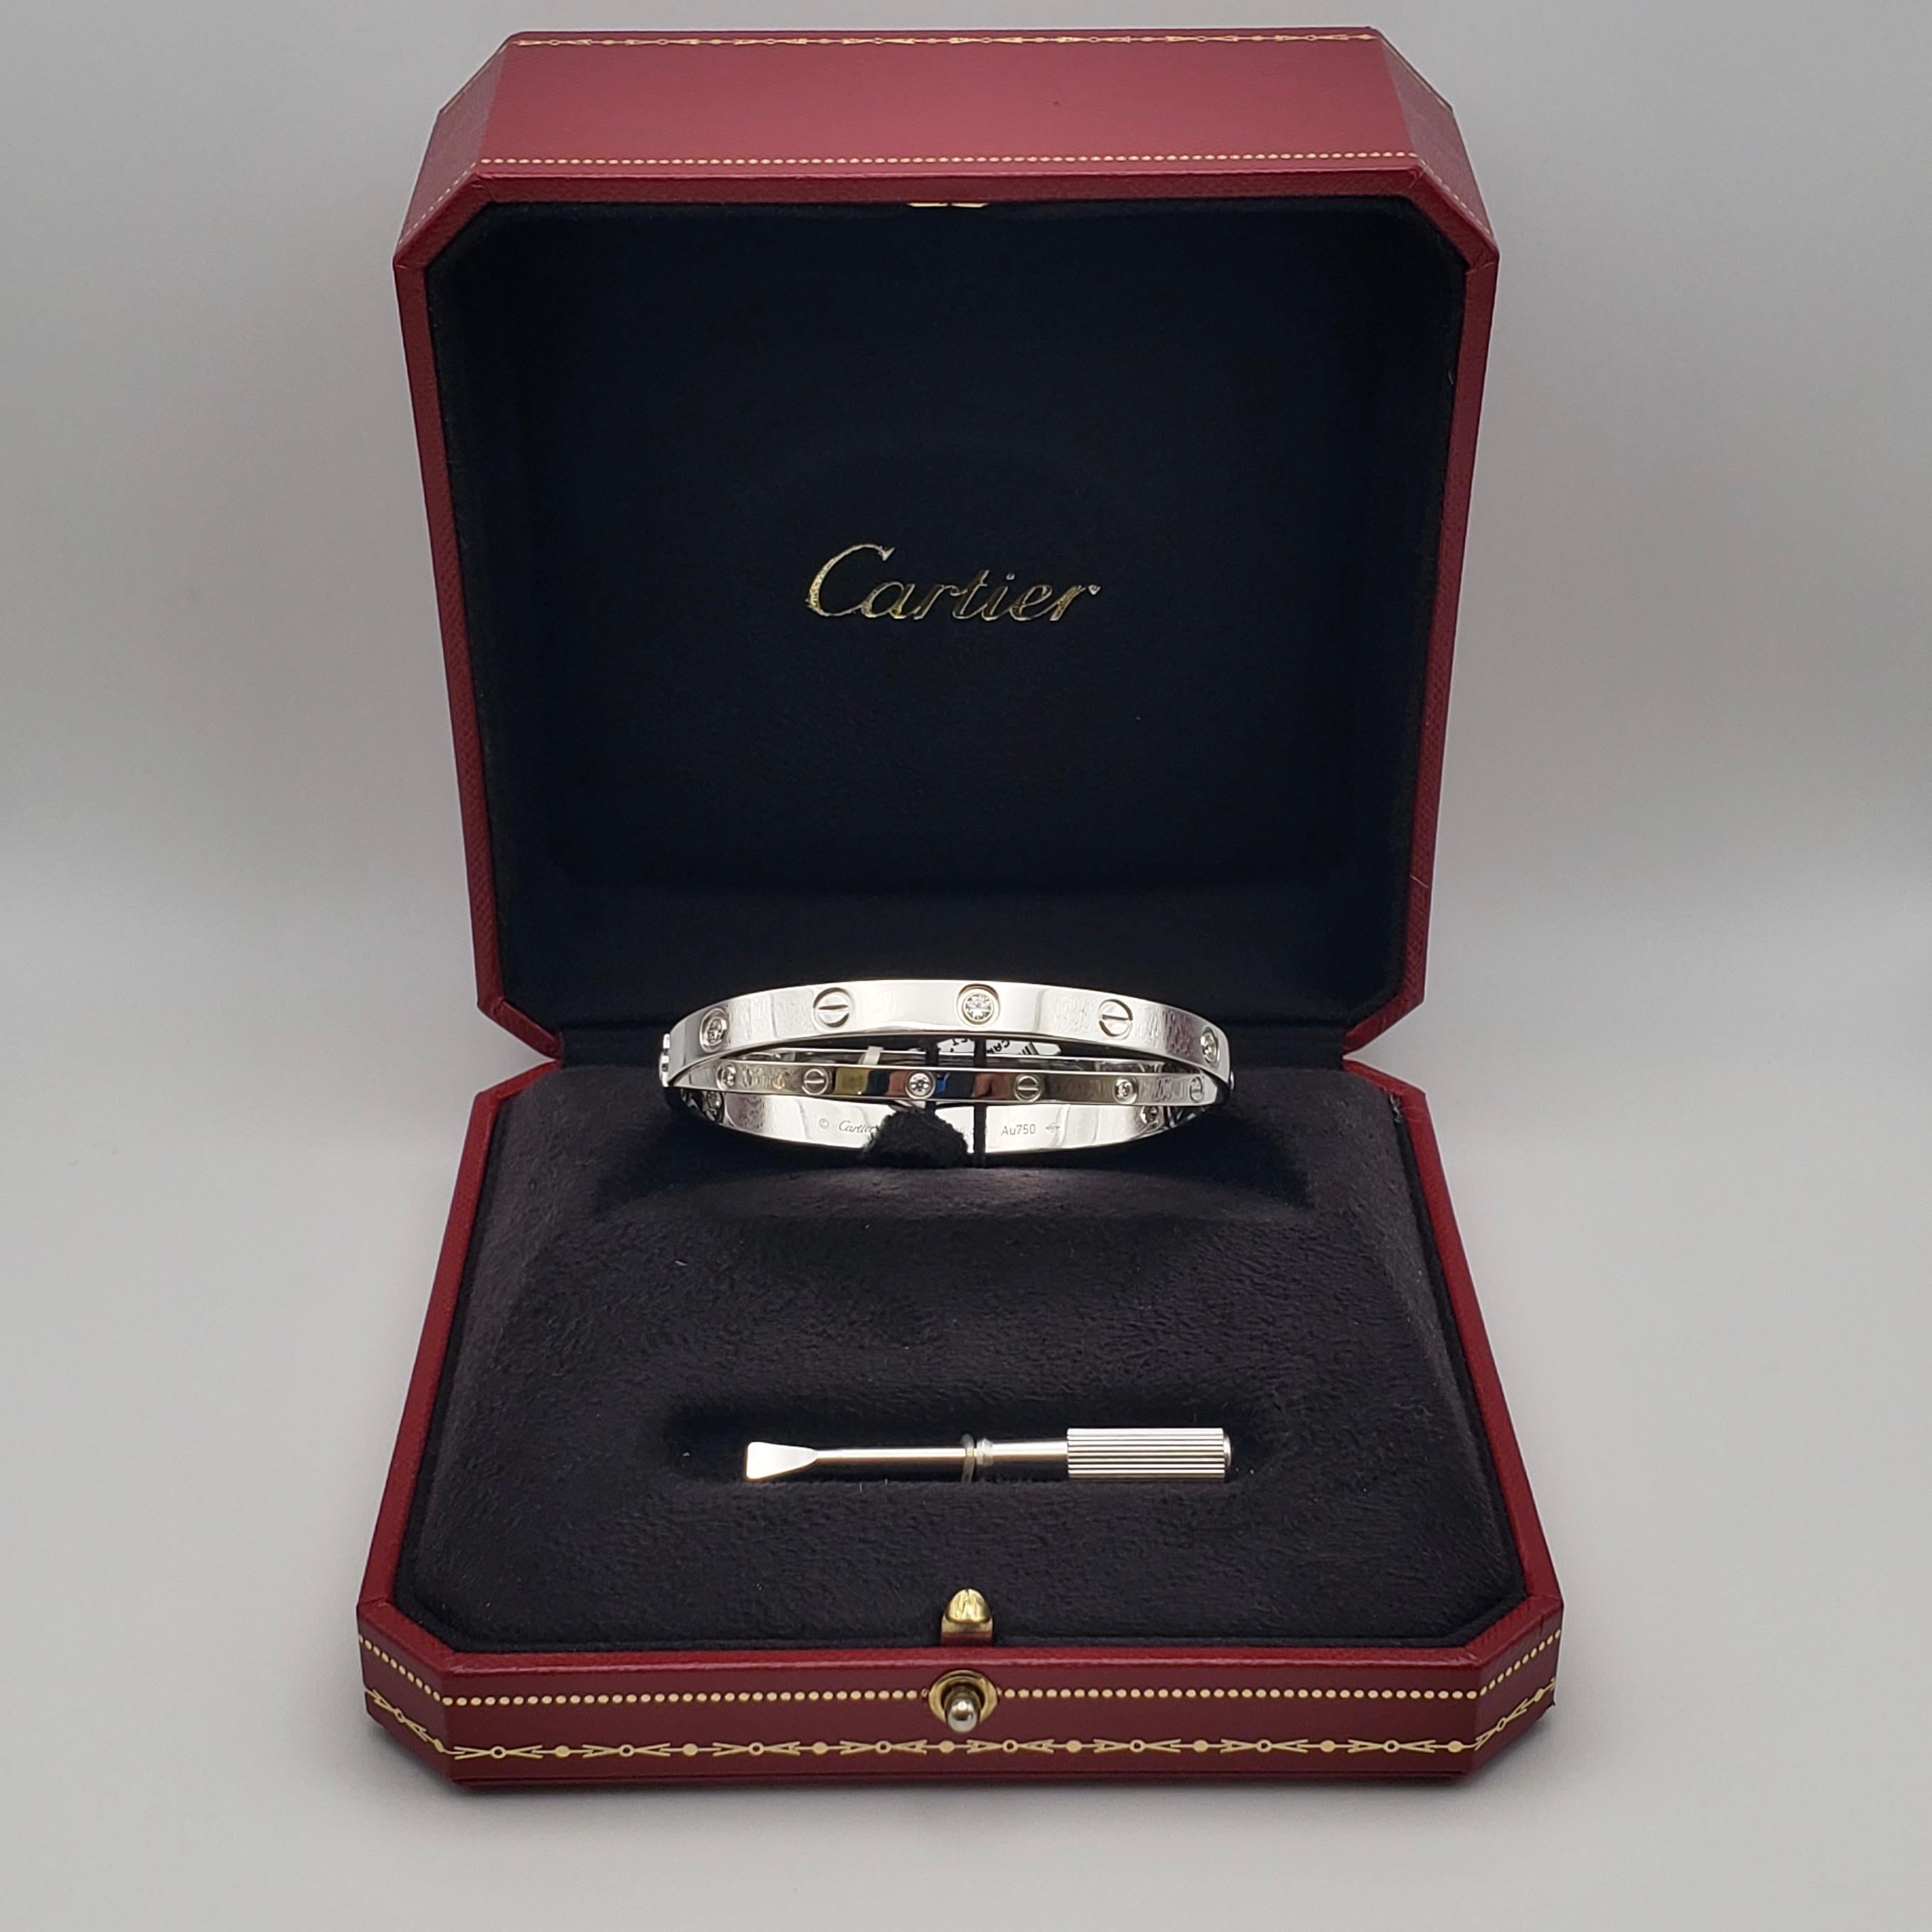 Authentique bracelet double Cartier Love en or blanc 18 carats, serti de diamants. 

Poids du diamant : 0,78 CT

Numéro de série : BVL463

Métal : Au750 (18K W.G.)

Poids brut : 49,80 grammes

La boîte d'exposition d'origine, le tournevis et